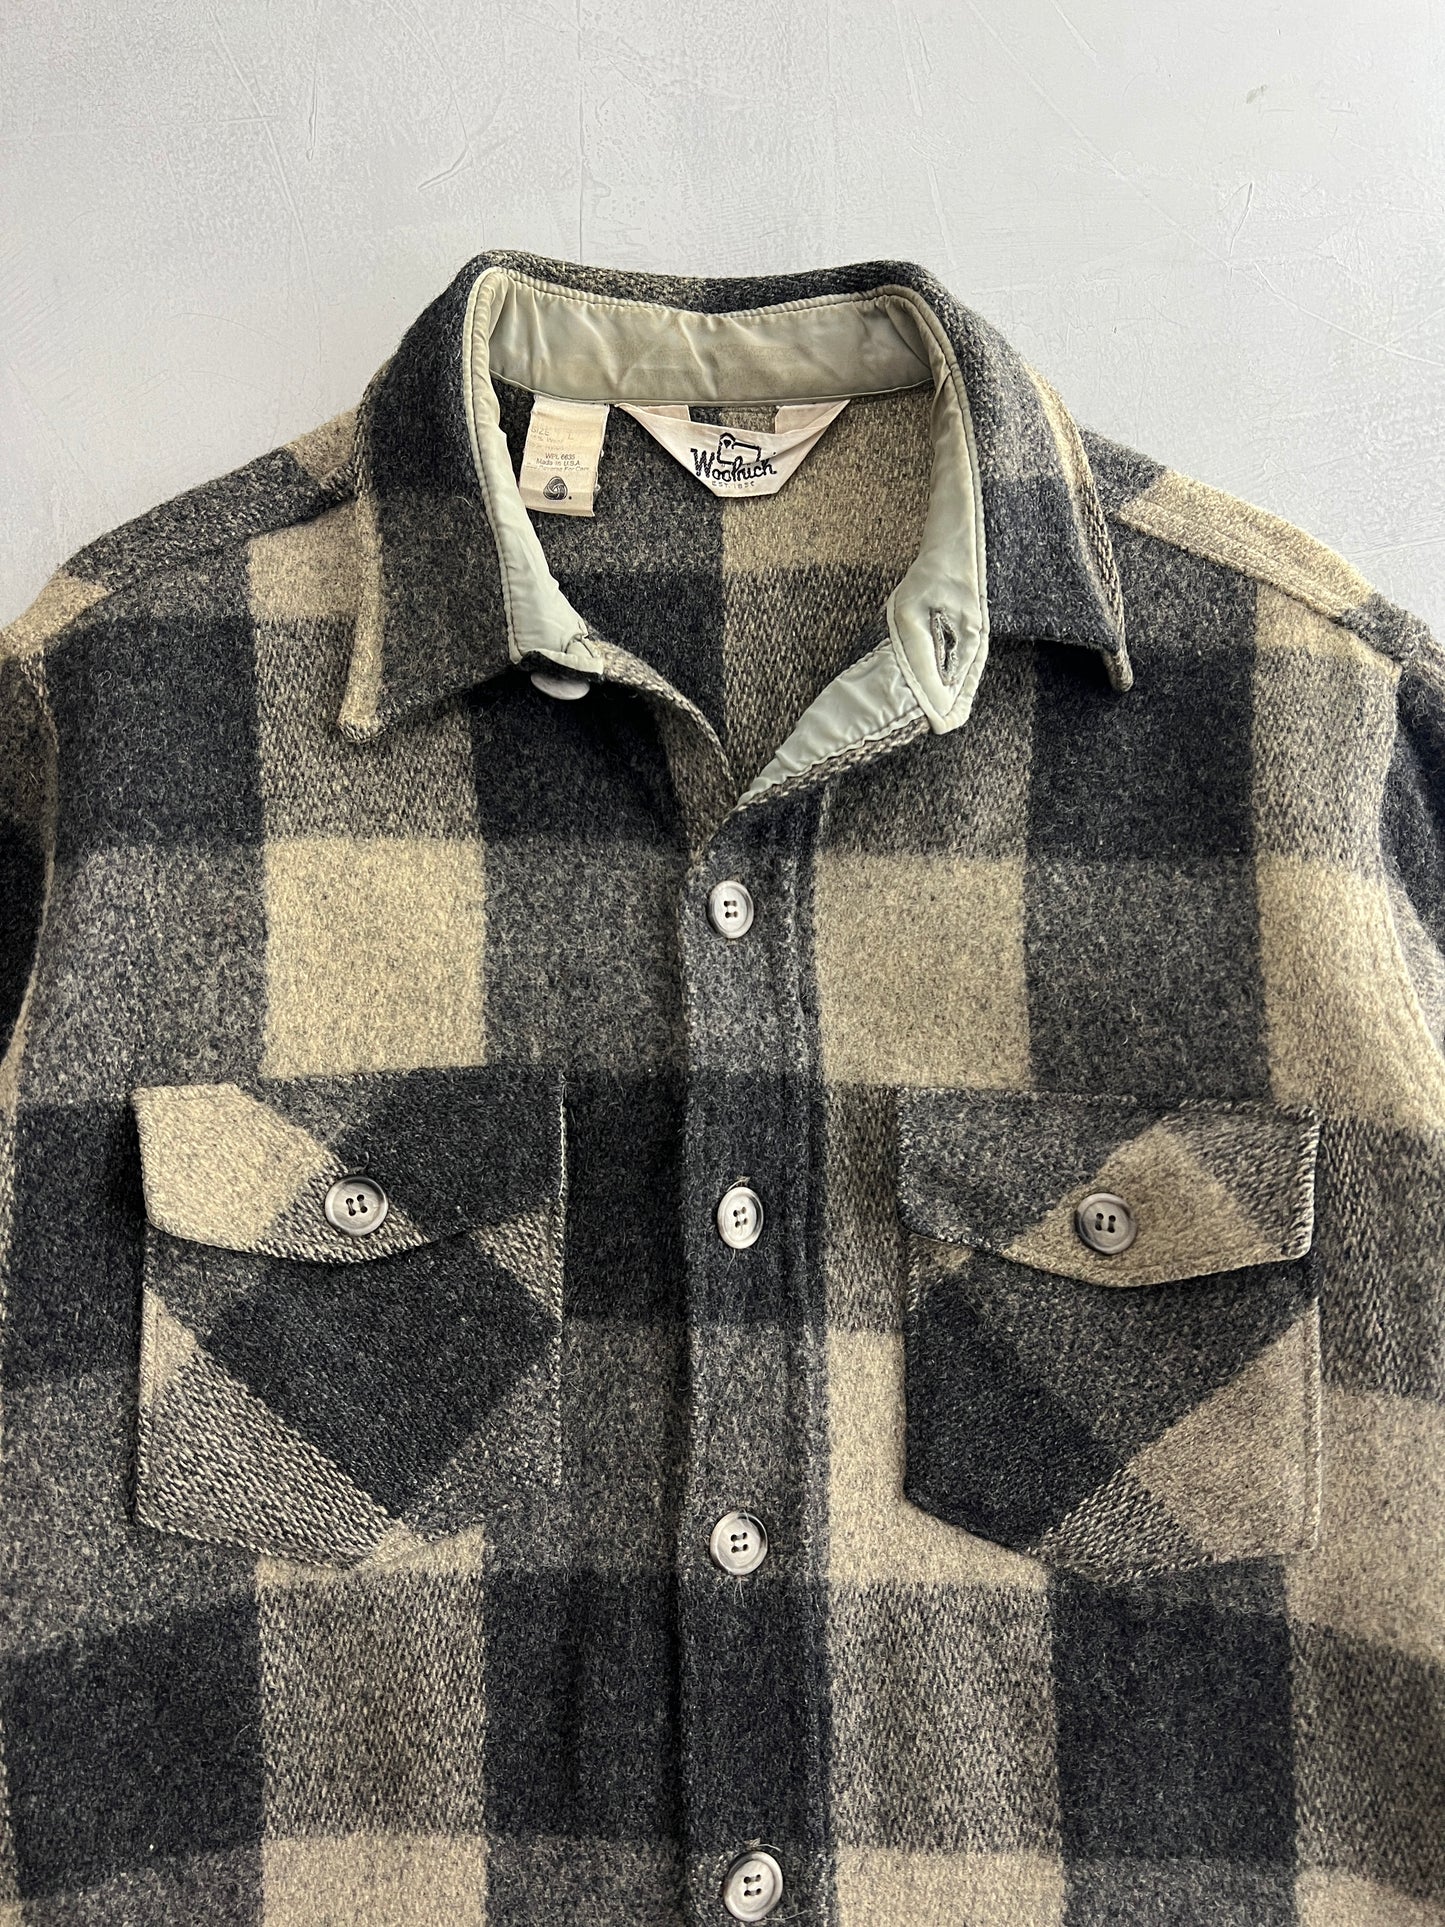 Woolrich Overshirt [L]